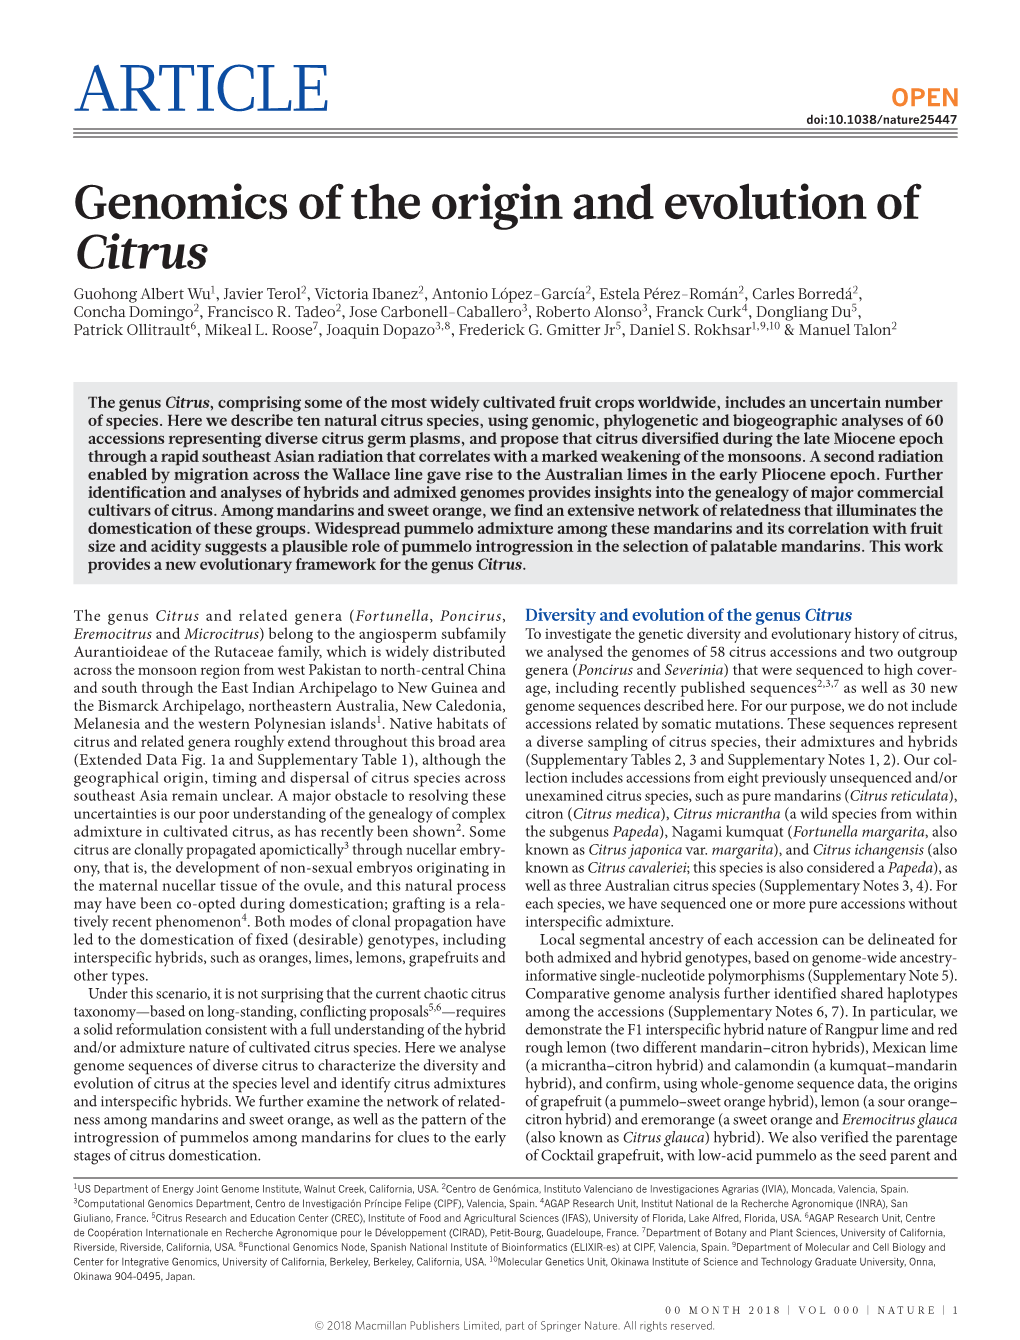 Genomics of the Origin and Evolution of Citrus